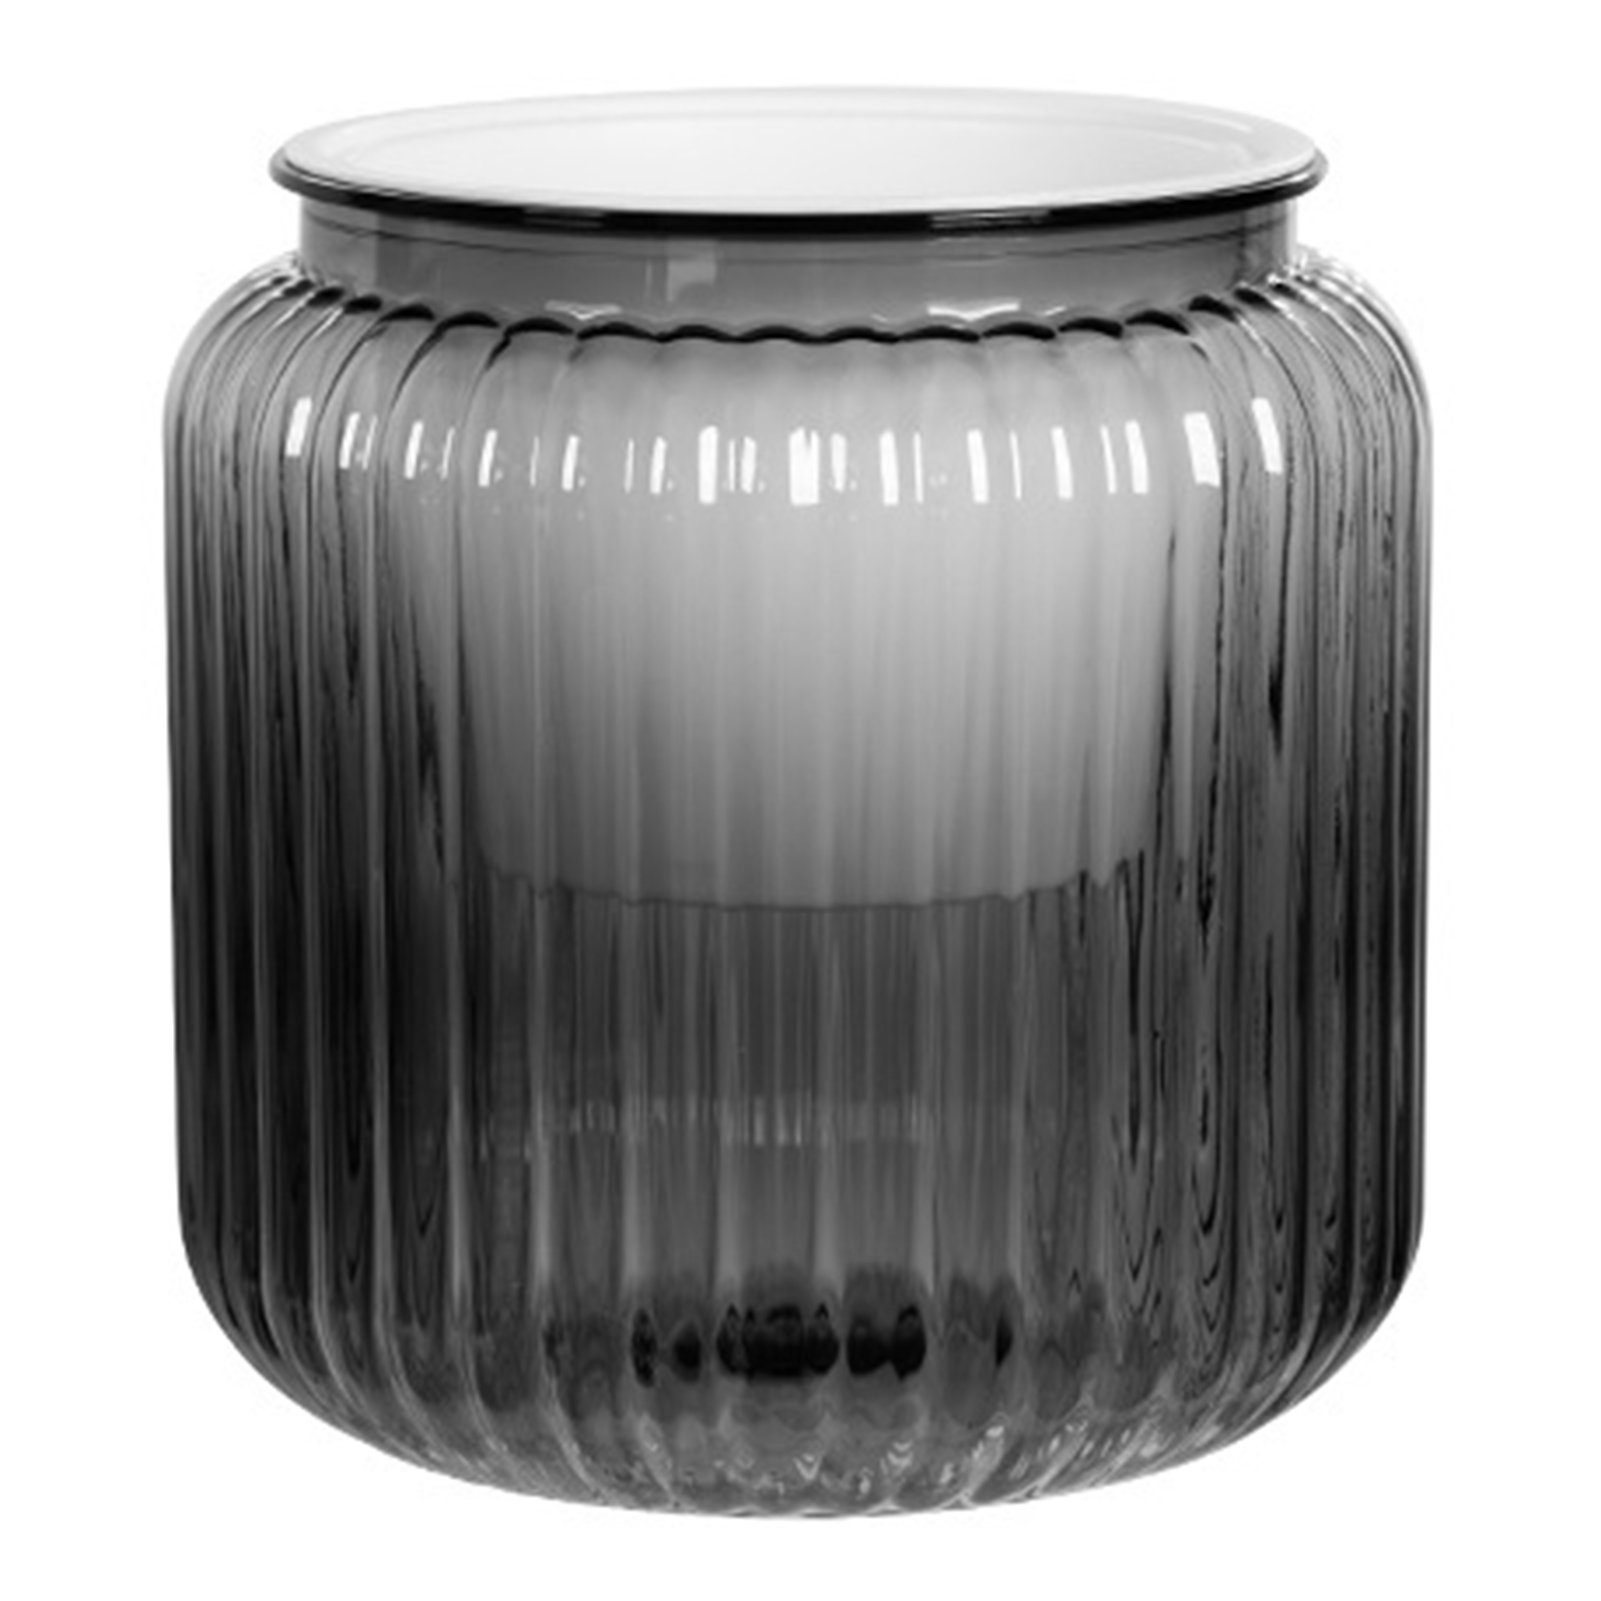 Blusmart Blumentopf Kunststoff-Blumentopf Mit Großem Flaschenmunddurchmesser transparent gray